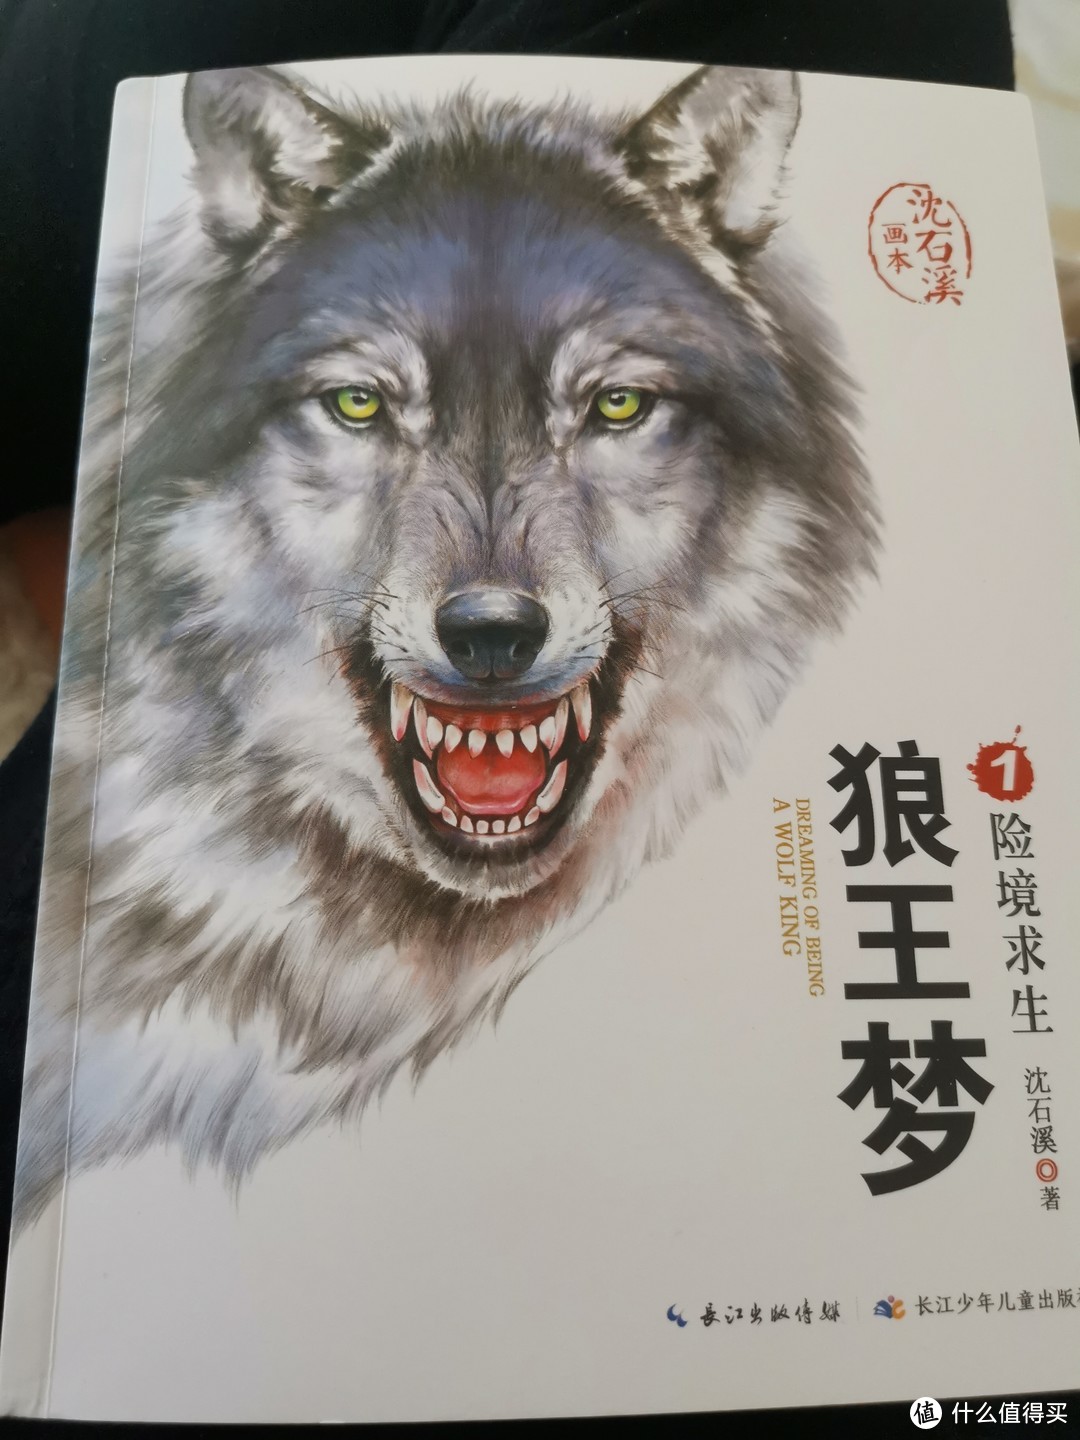 推荐一款适合小学生阅读的书籍《狼王梦》